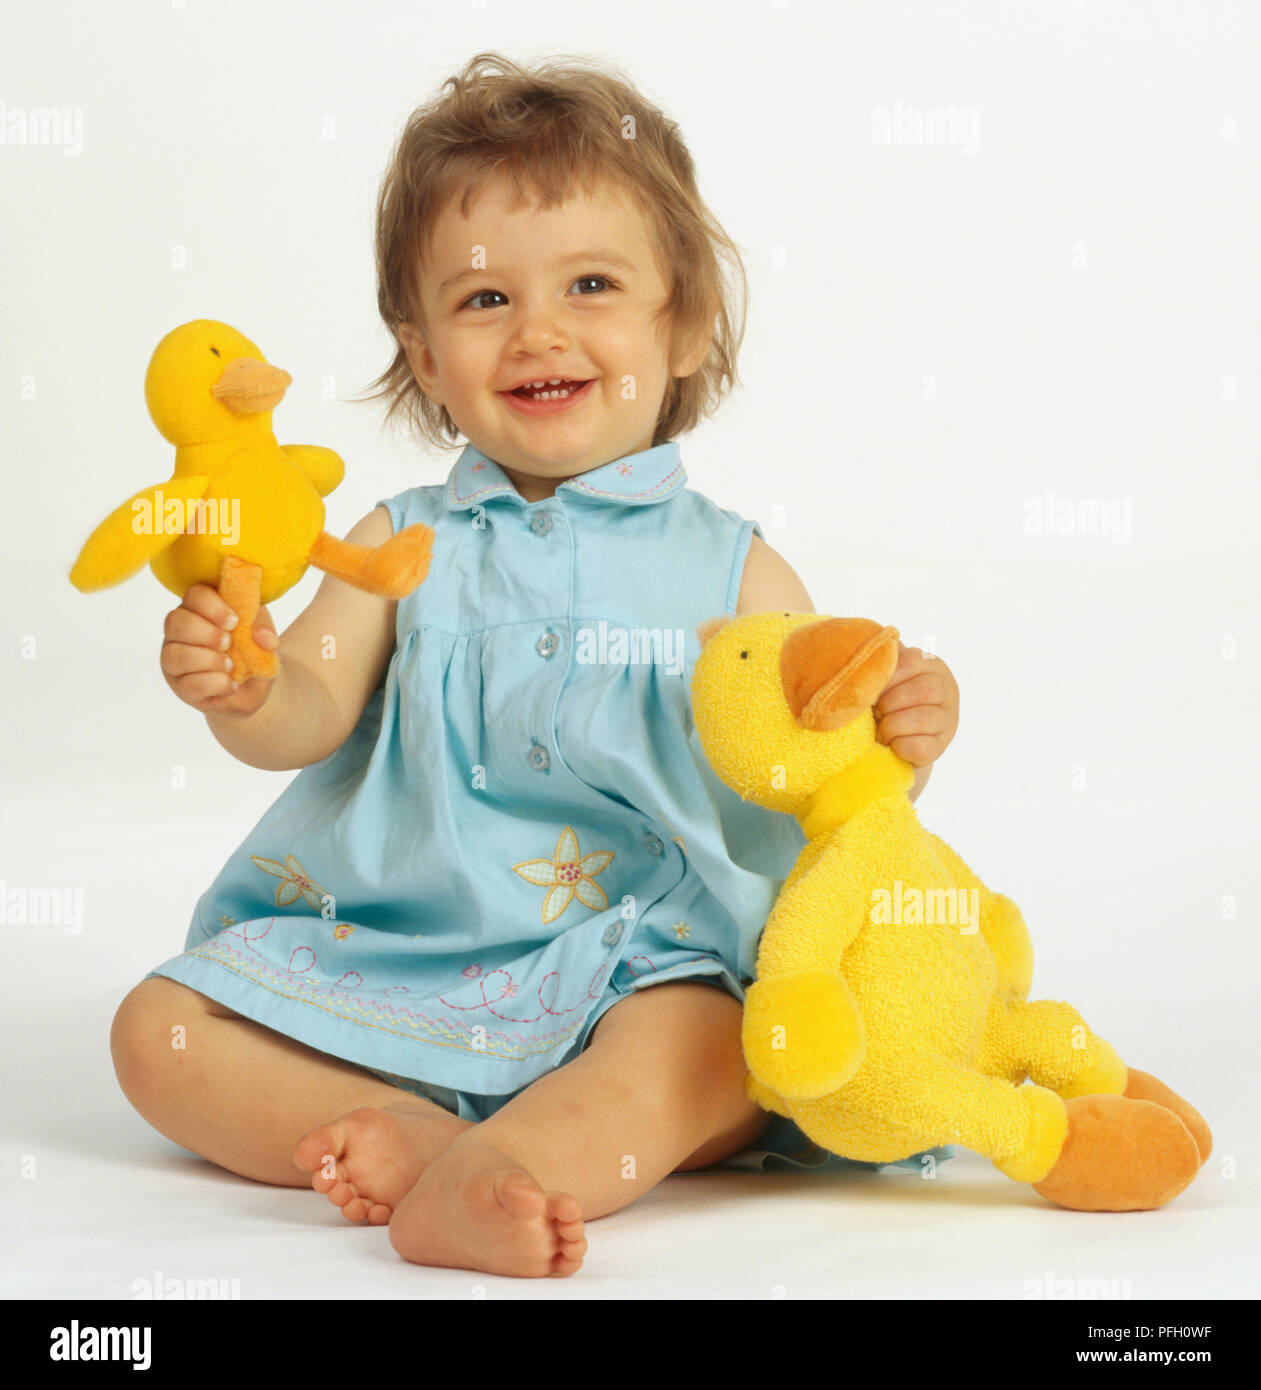 duck dress for baby girl